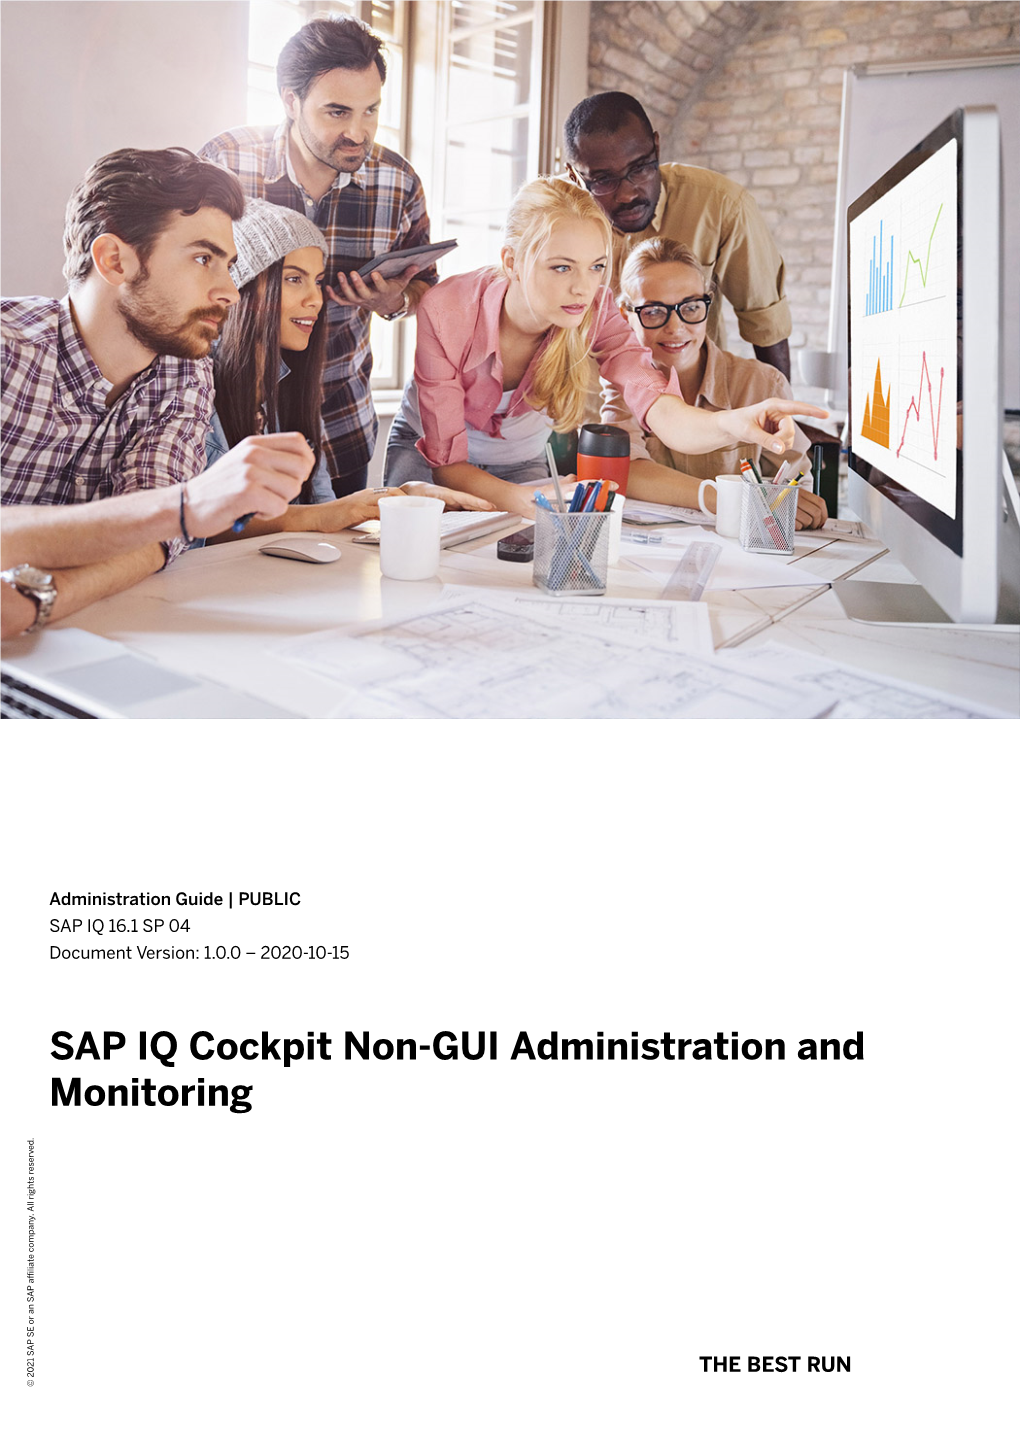 SAP IQ Cockpit Non-GUI Administration and Monitoring Company